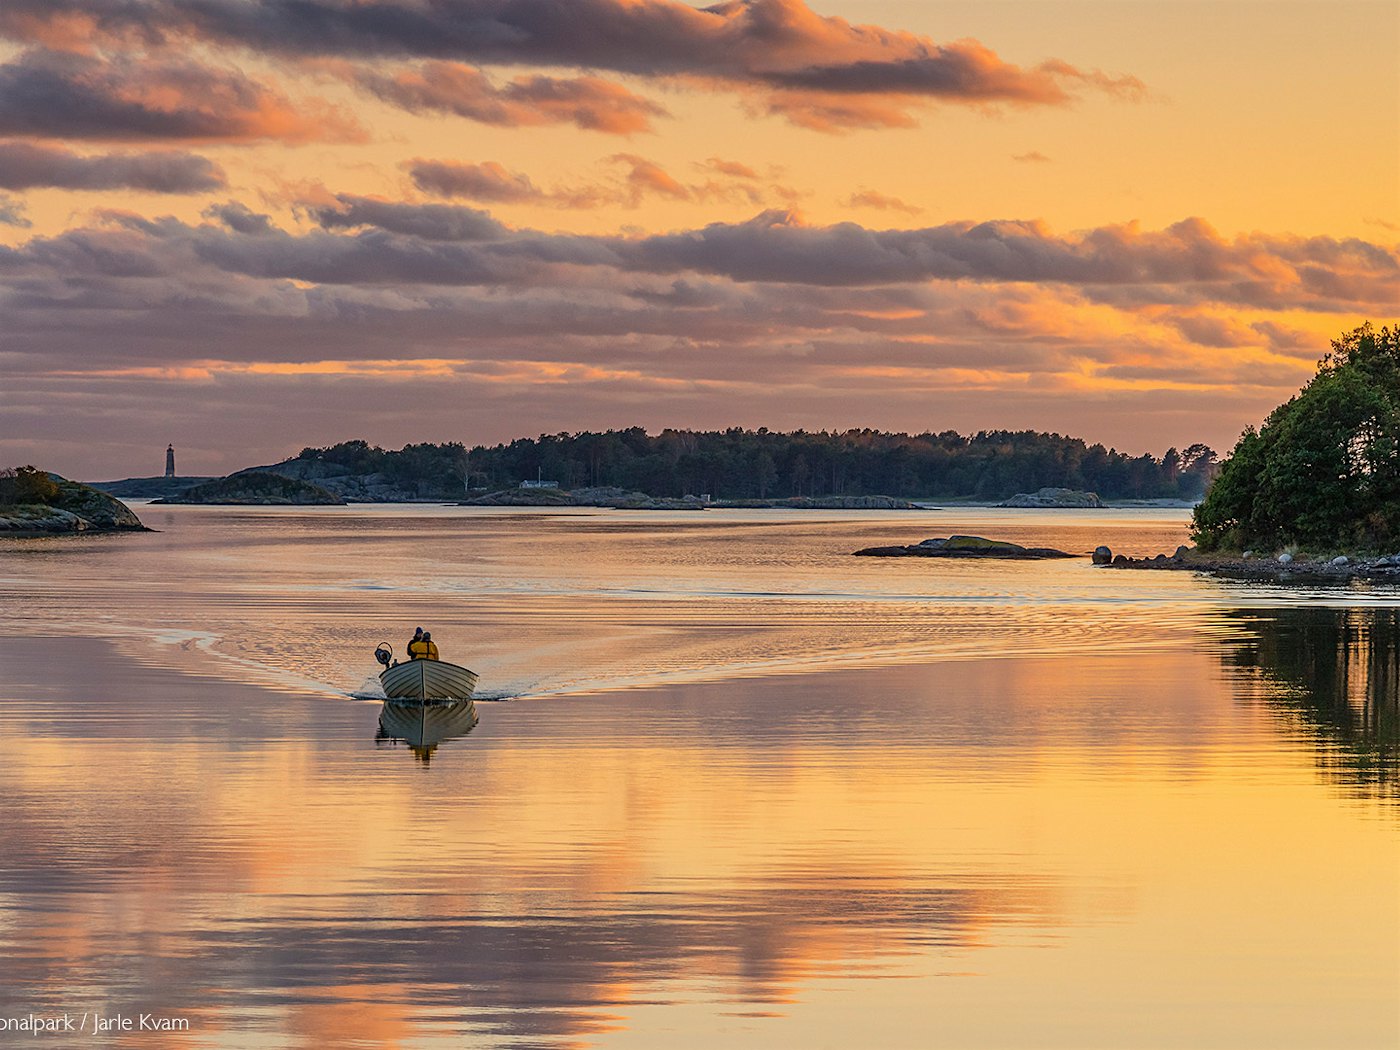 Båt kjører bortover blikkstille vann med dramatisk solnedgang som reflekteres i vannet.